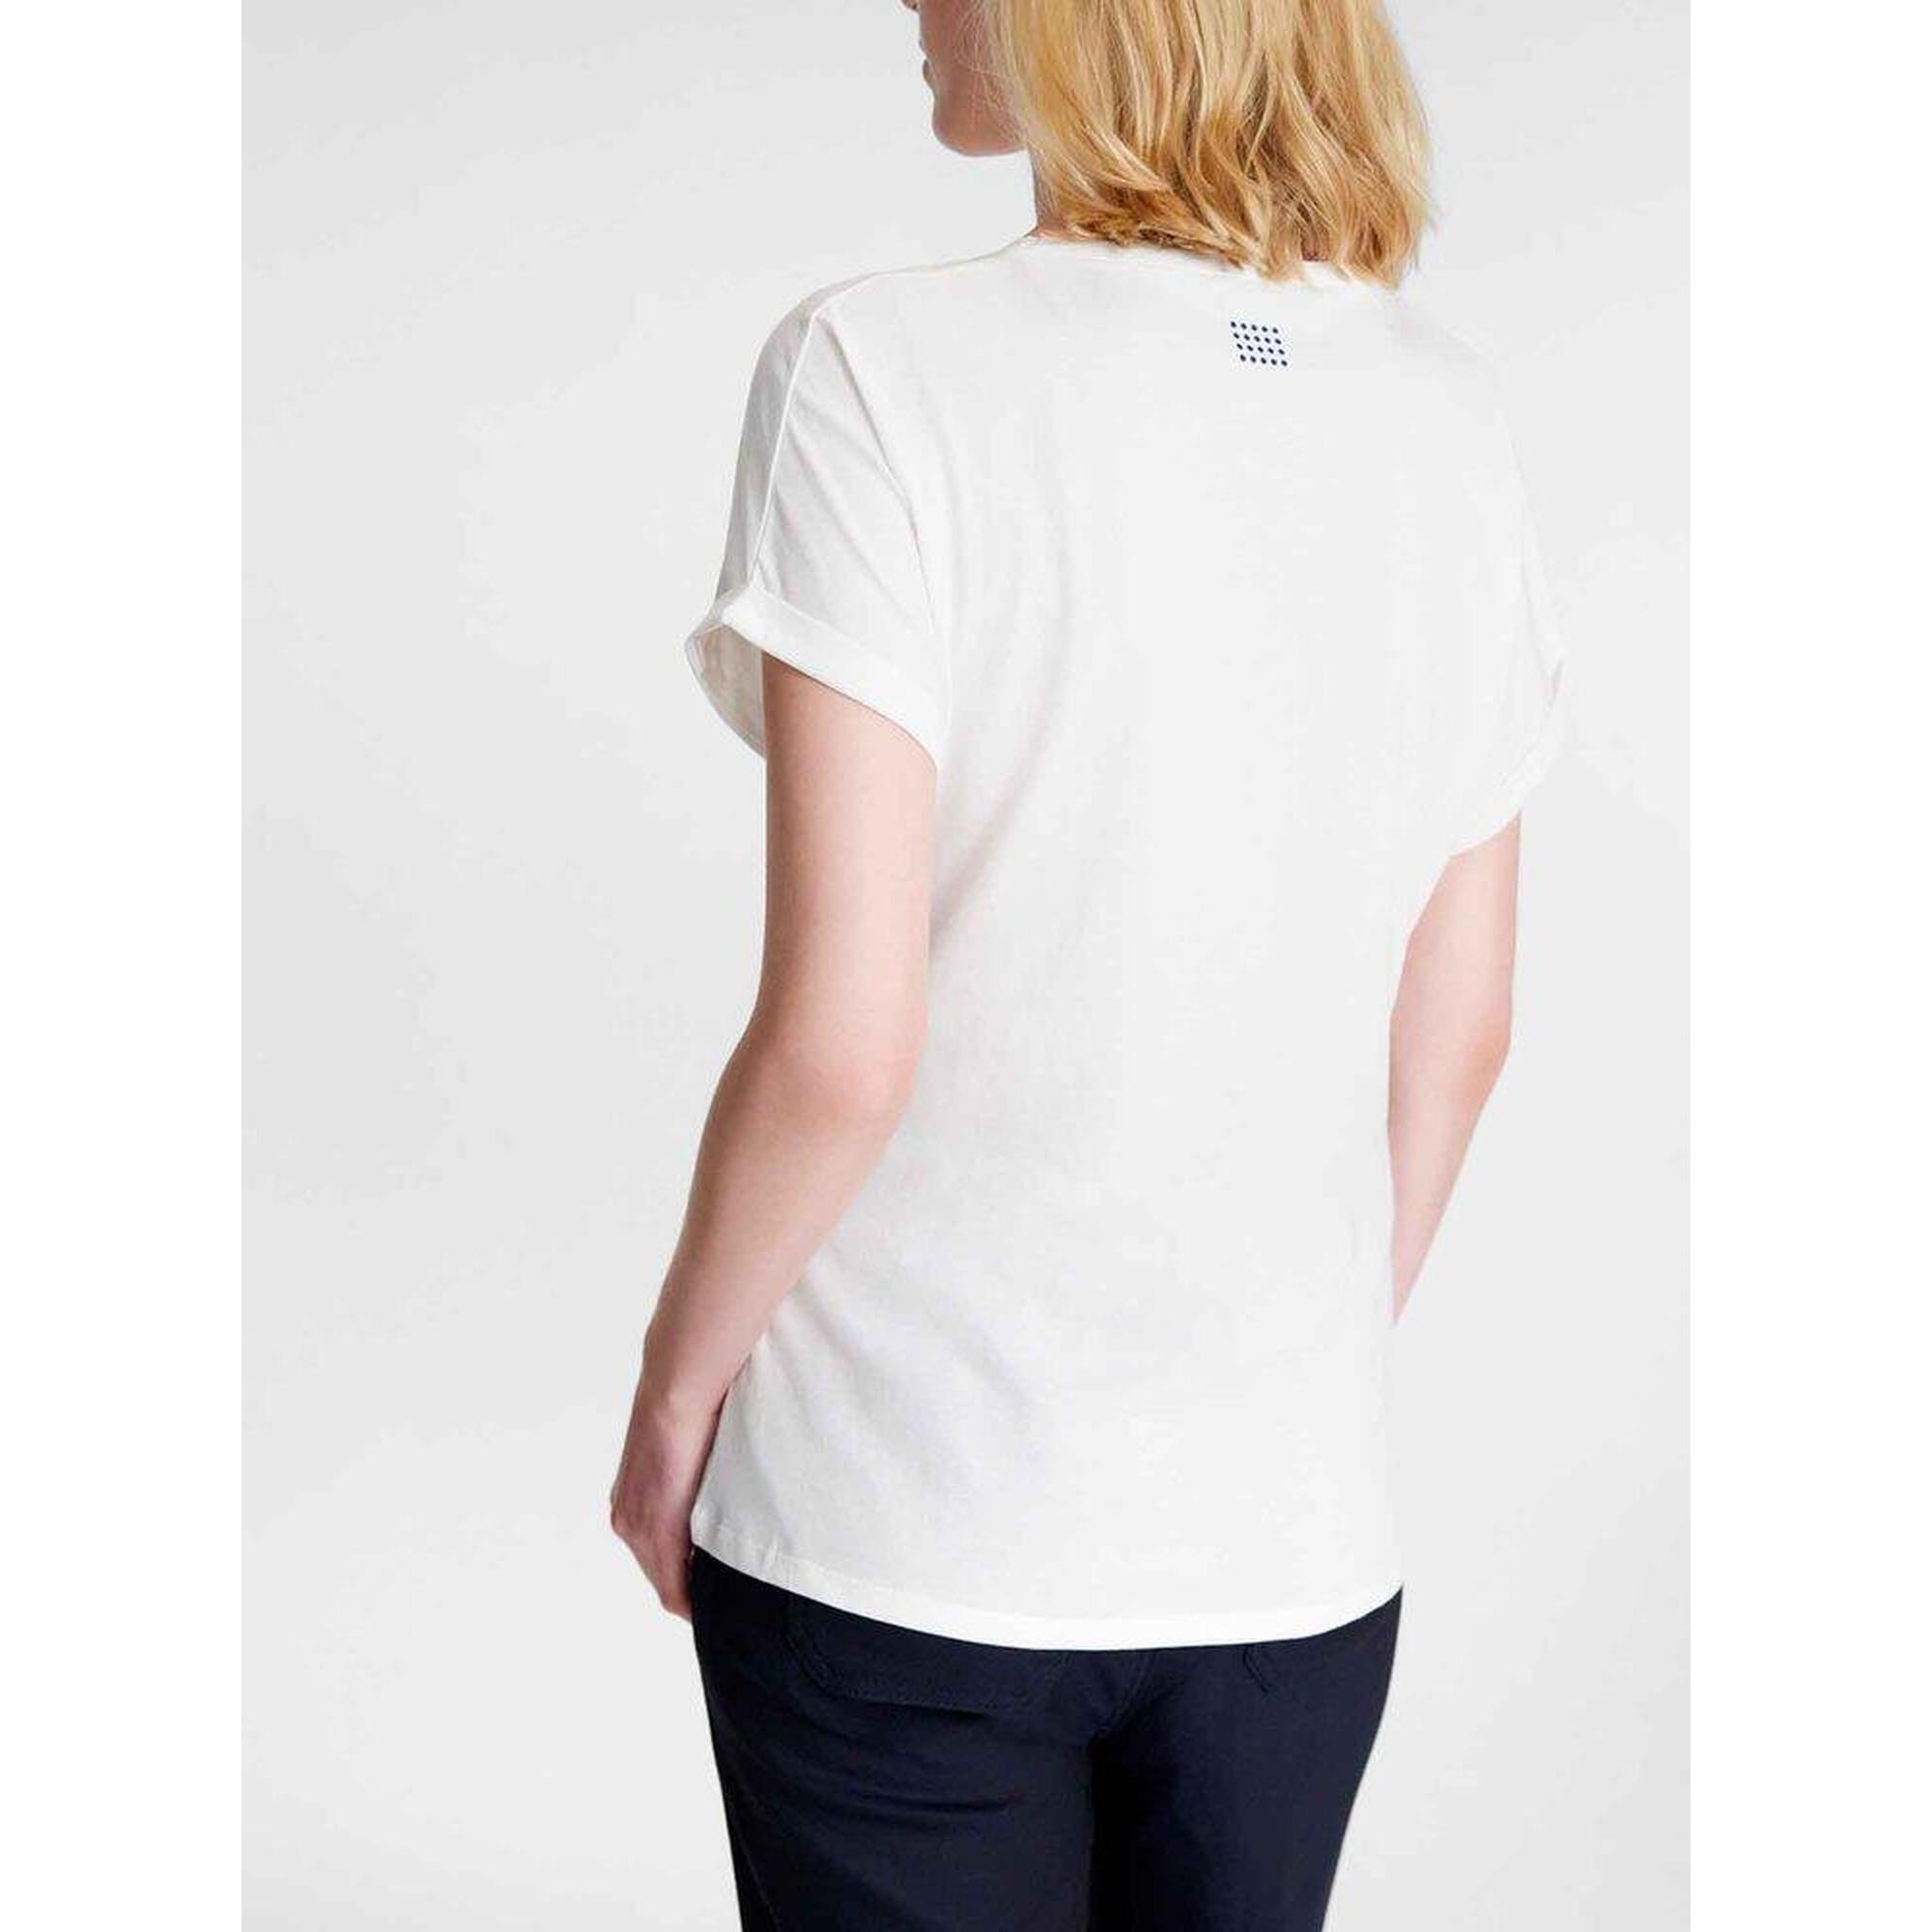 T-shirt manches courtes Femme - PIANATEE Arctique